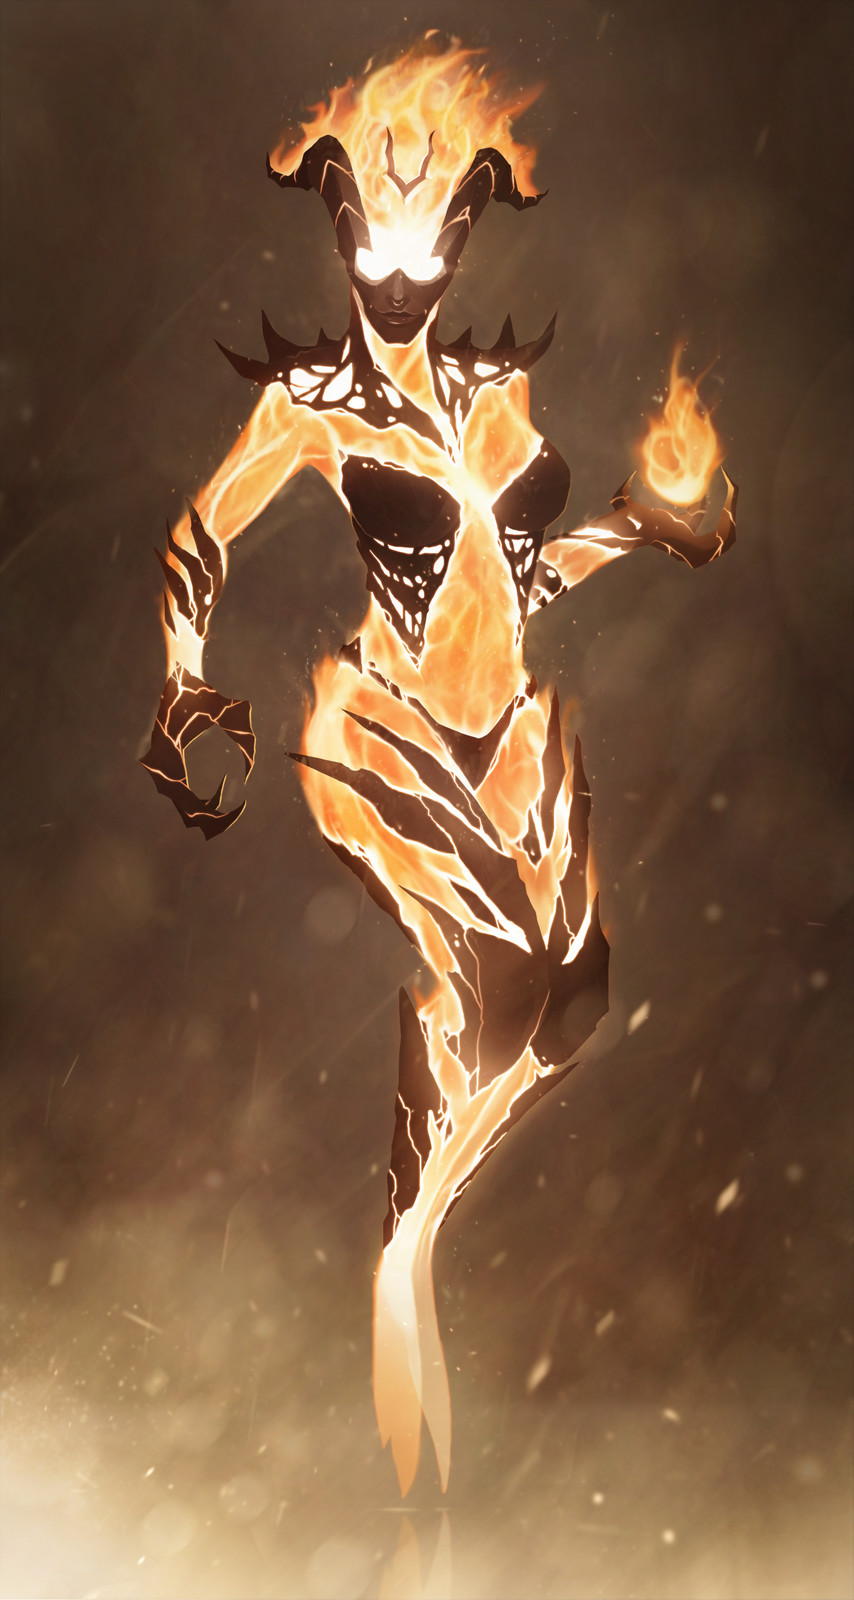 Skyrim - Flame Atronach.